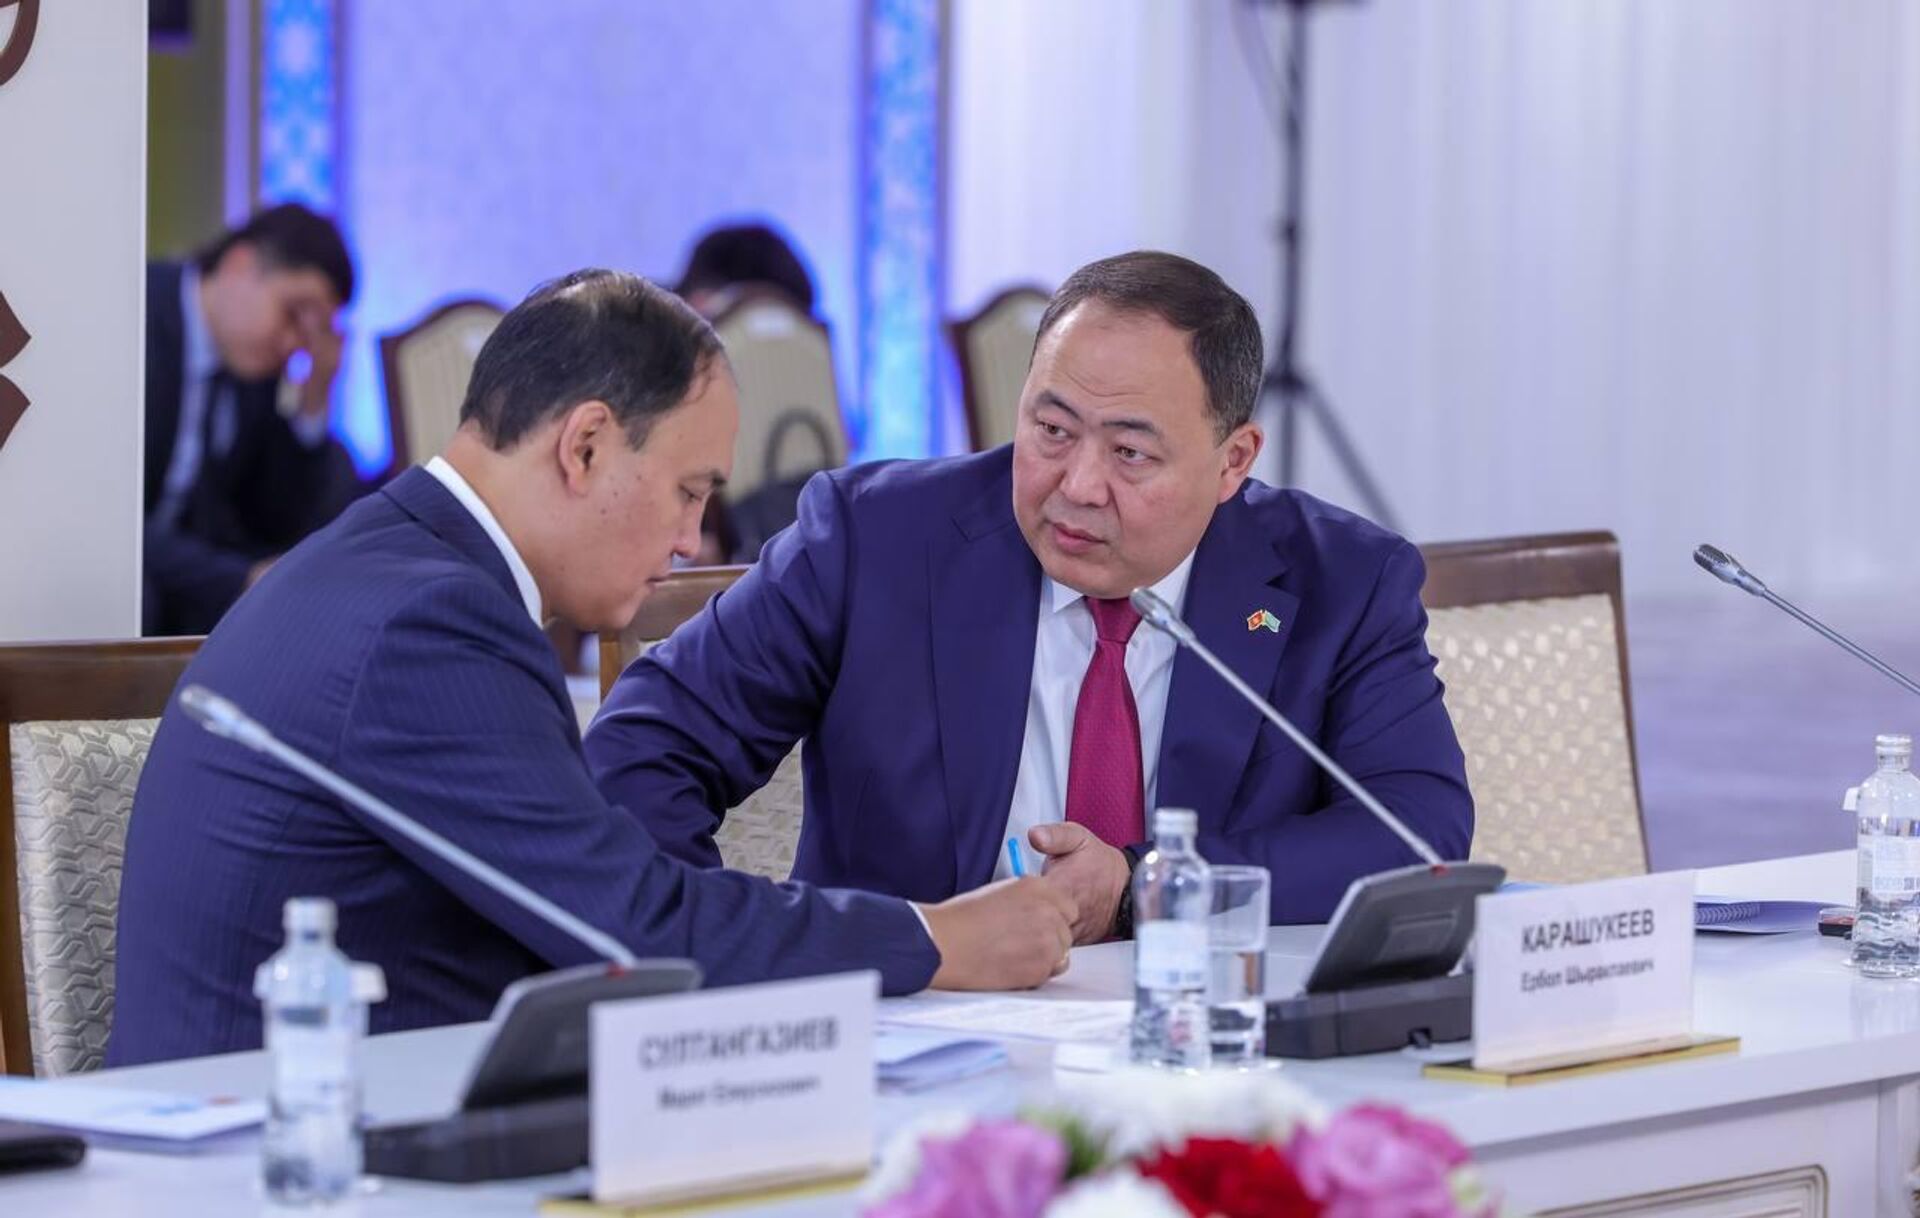 Премьер-министры Казахстана и Кыргызстана провели переговоры в рамках межправительственного совета - Sputnik Казахстан, 1920, 23.09.2023